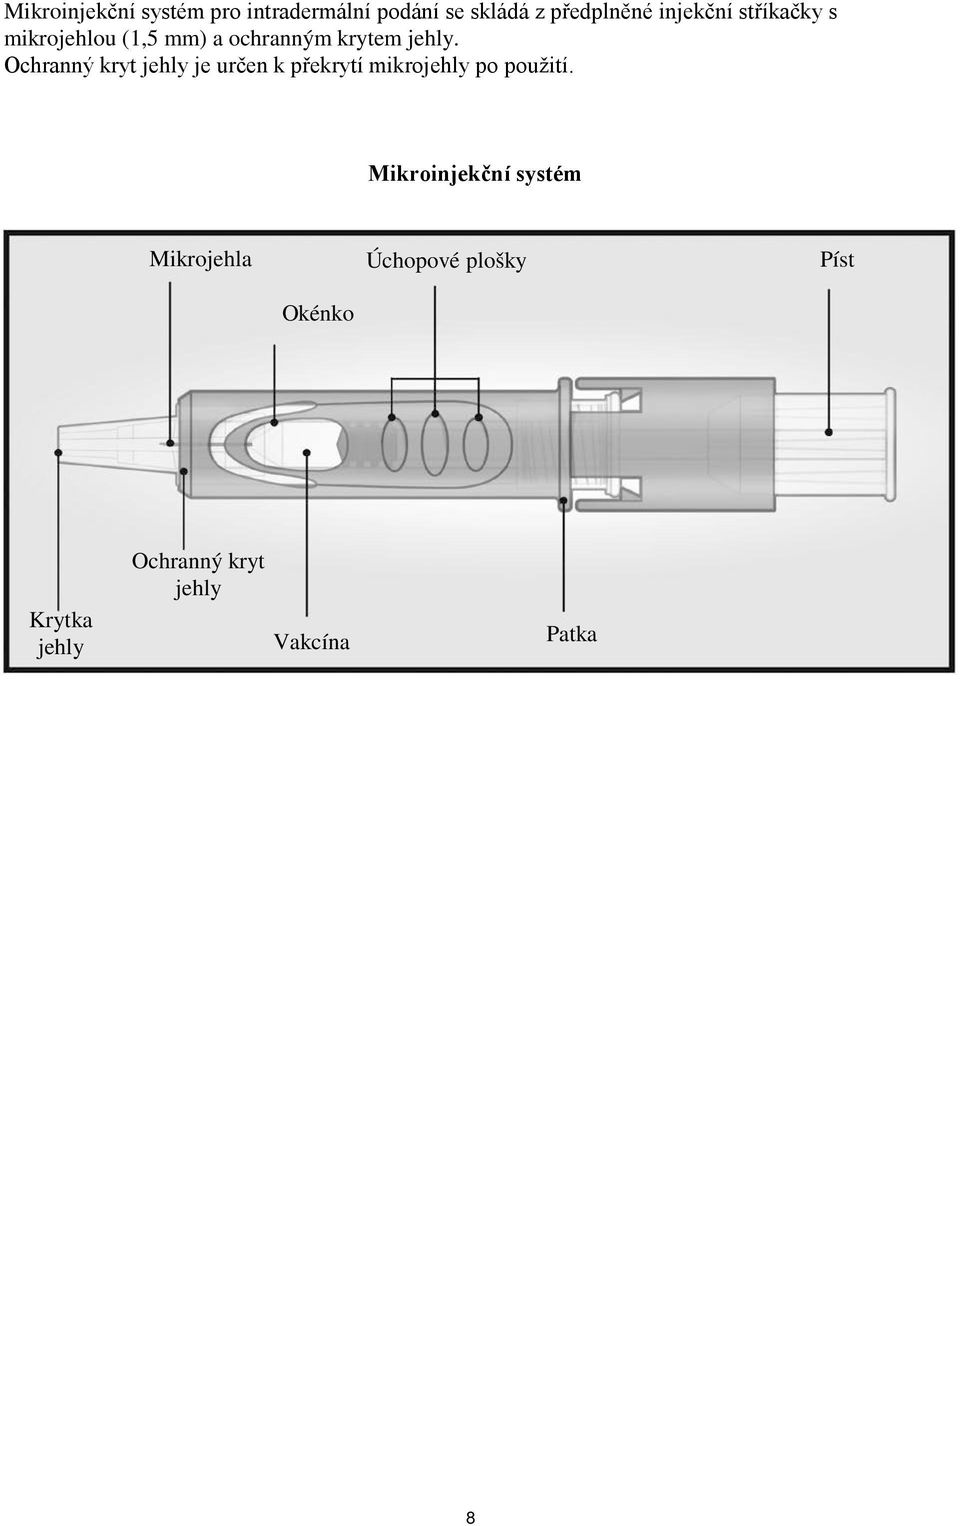 Ochranný kryt jehly je určen k překrytí mikrojehly po použití.